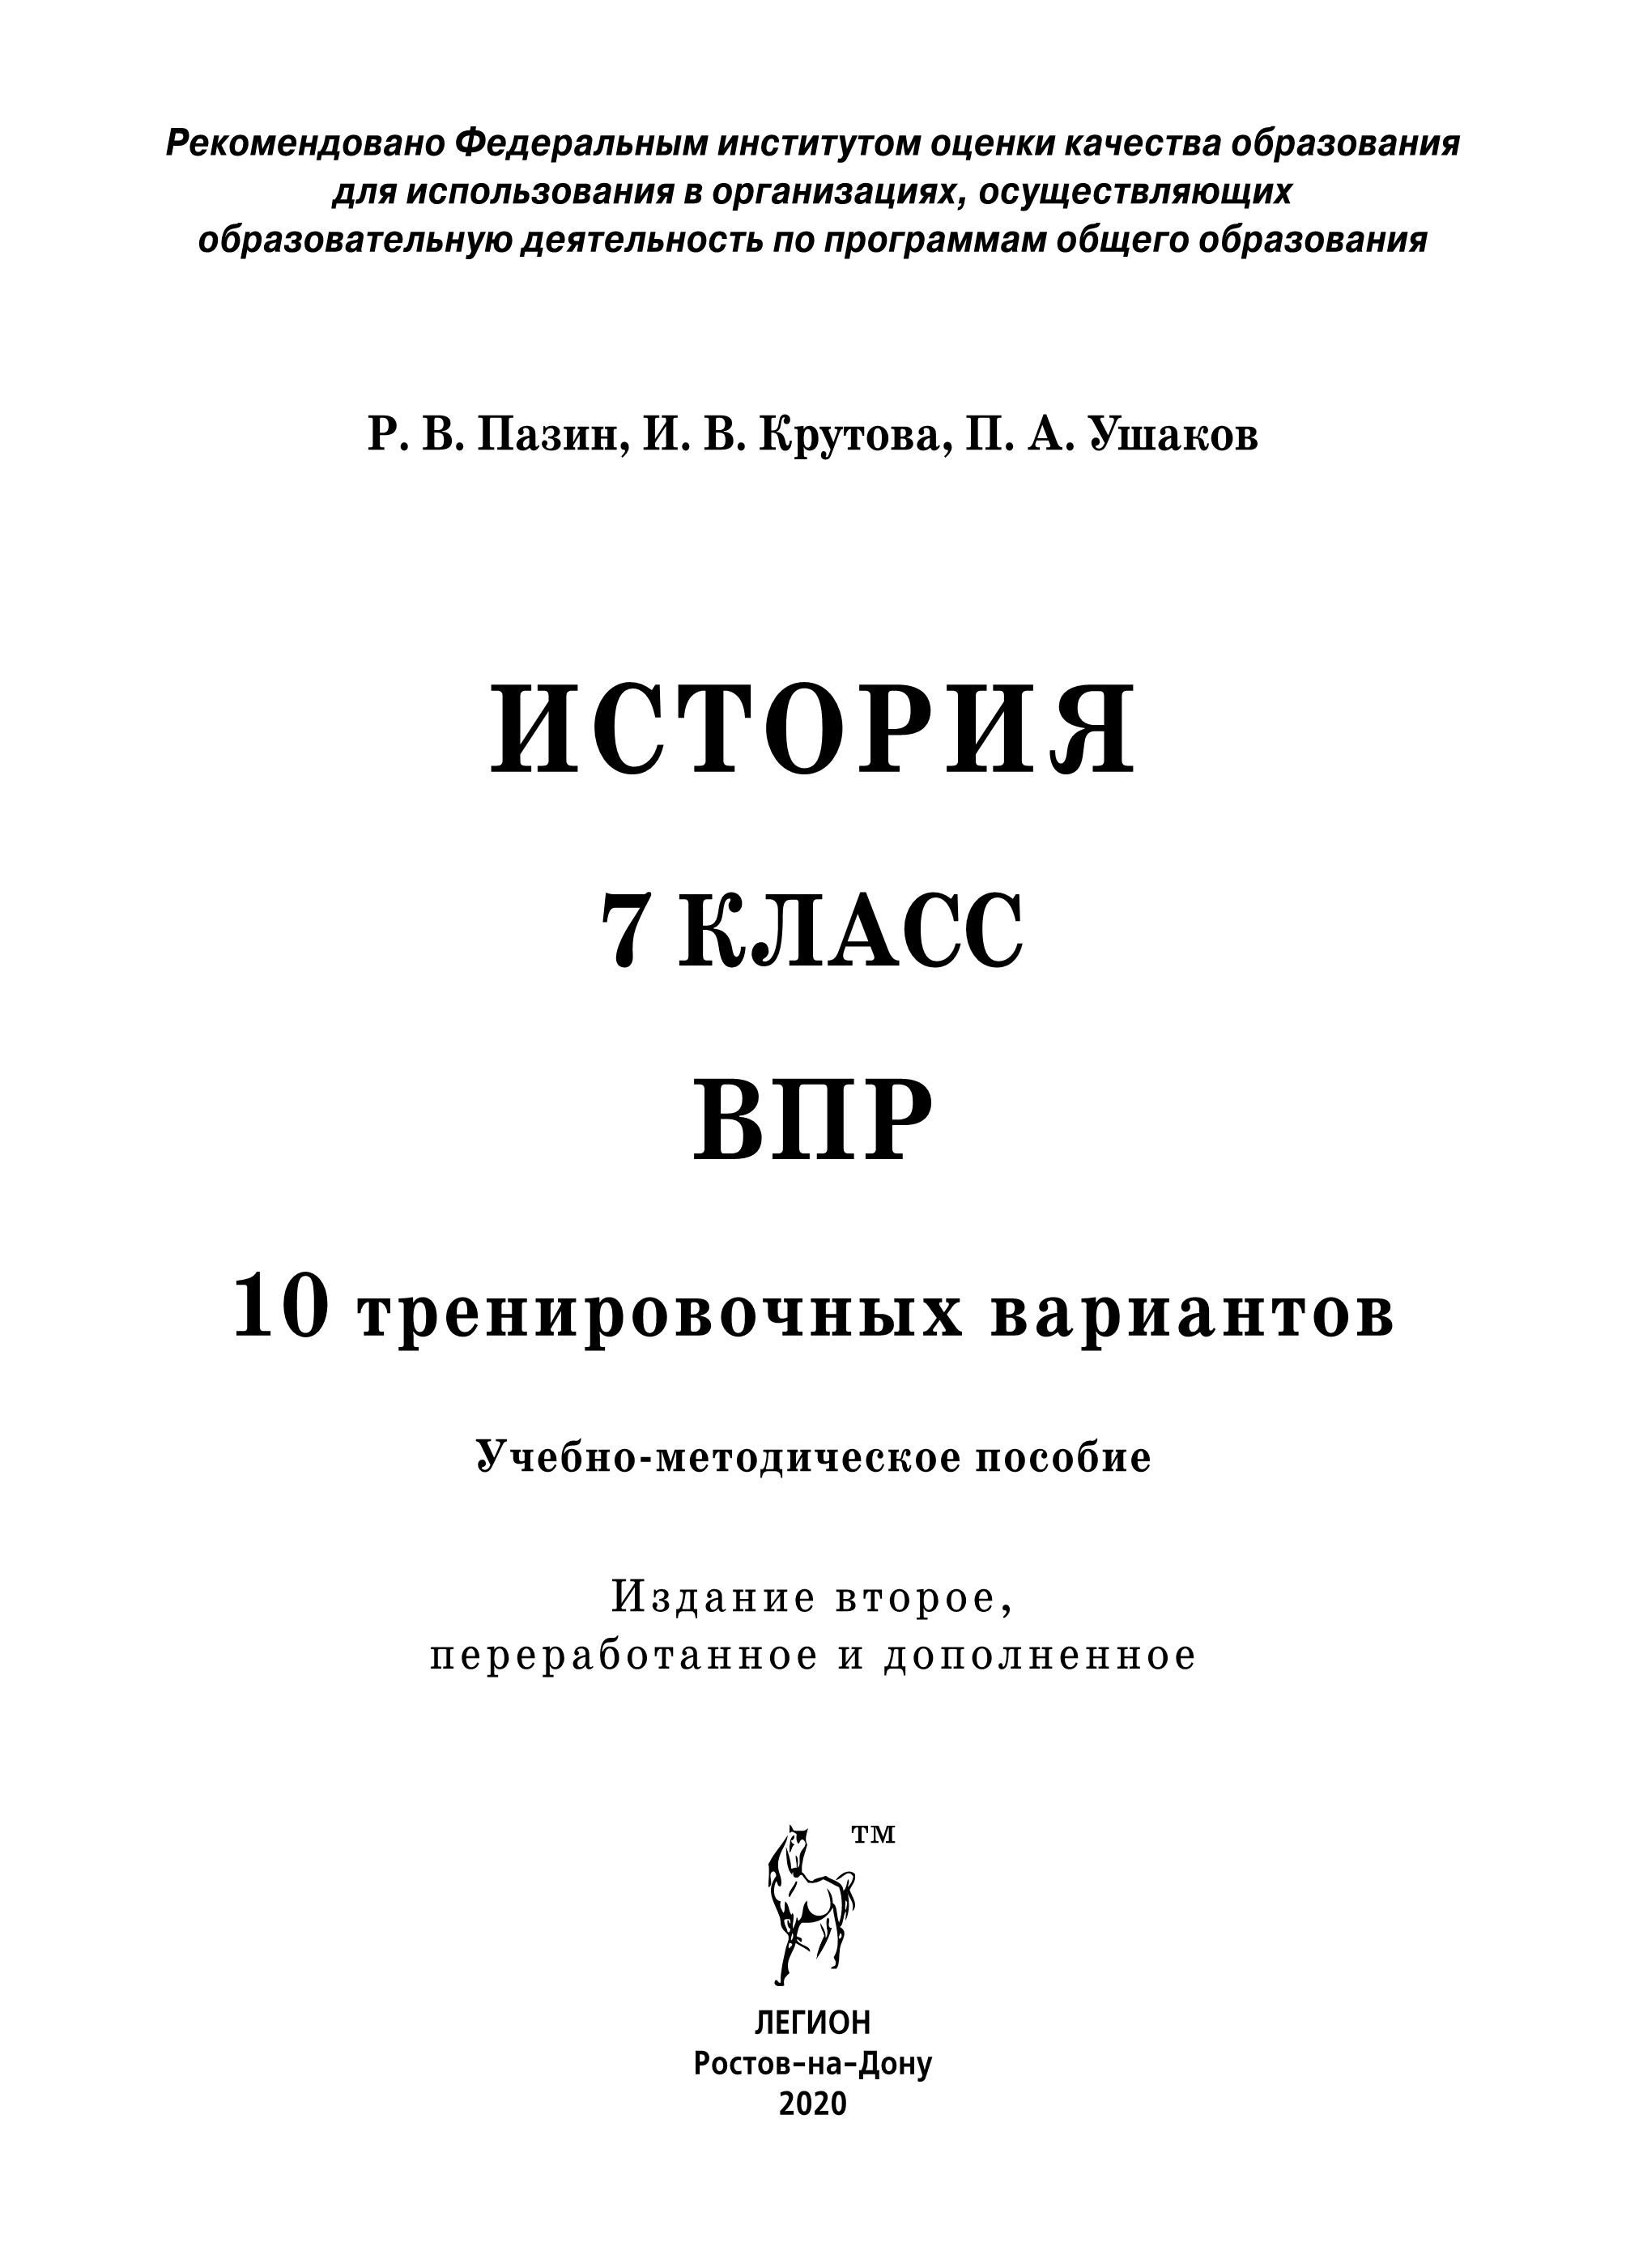 История. ВПР. 7-й класс. 10 тренировочных вариантов. 2-е изд.